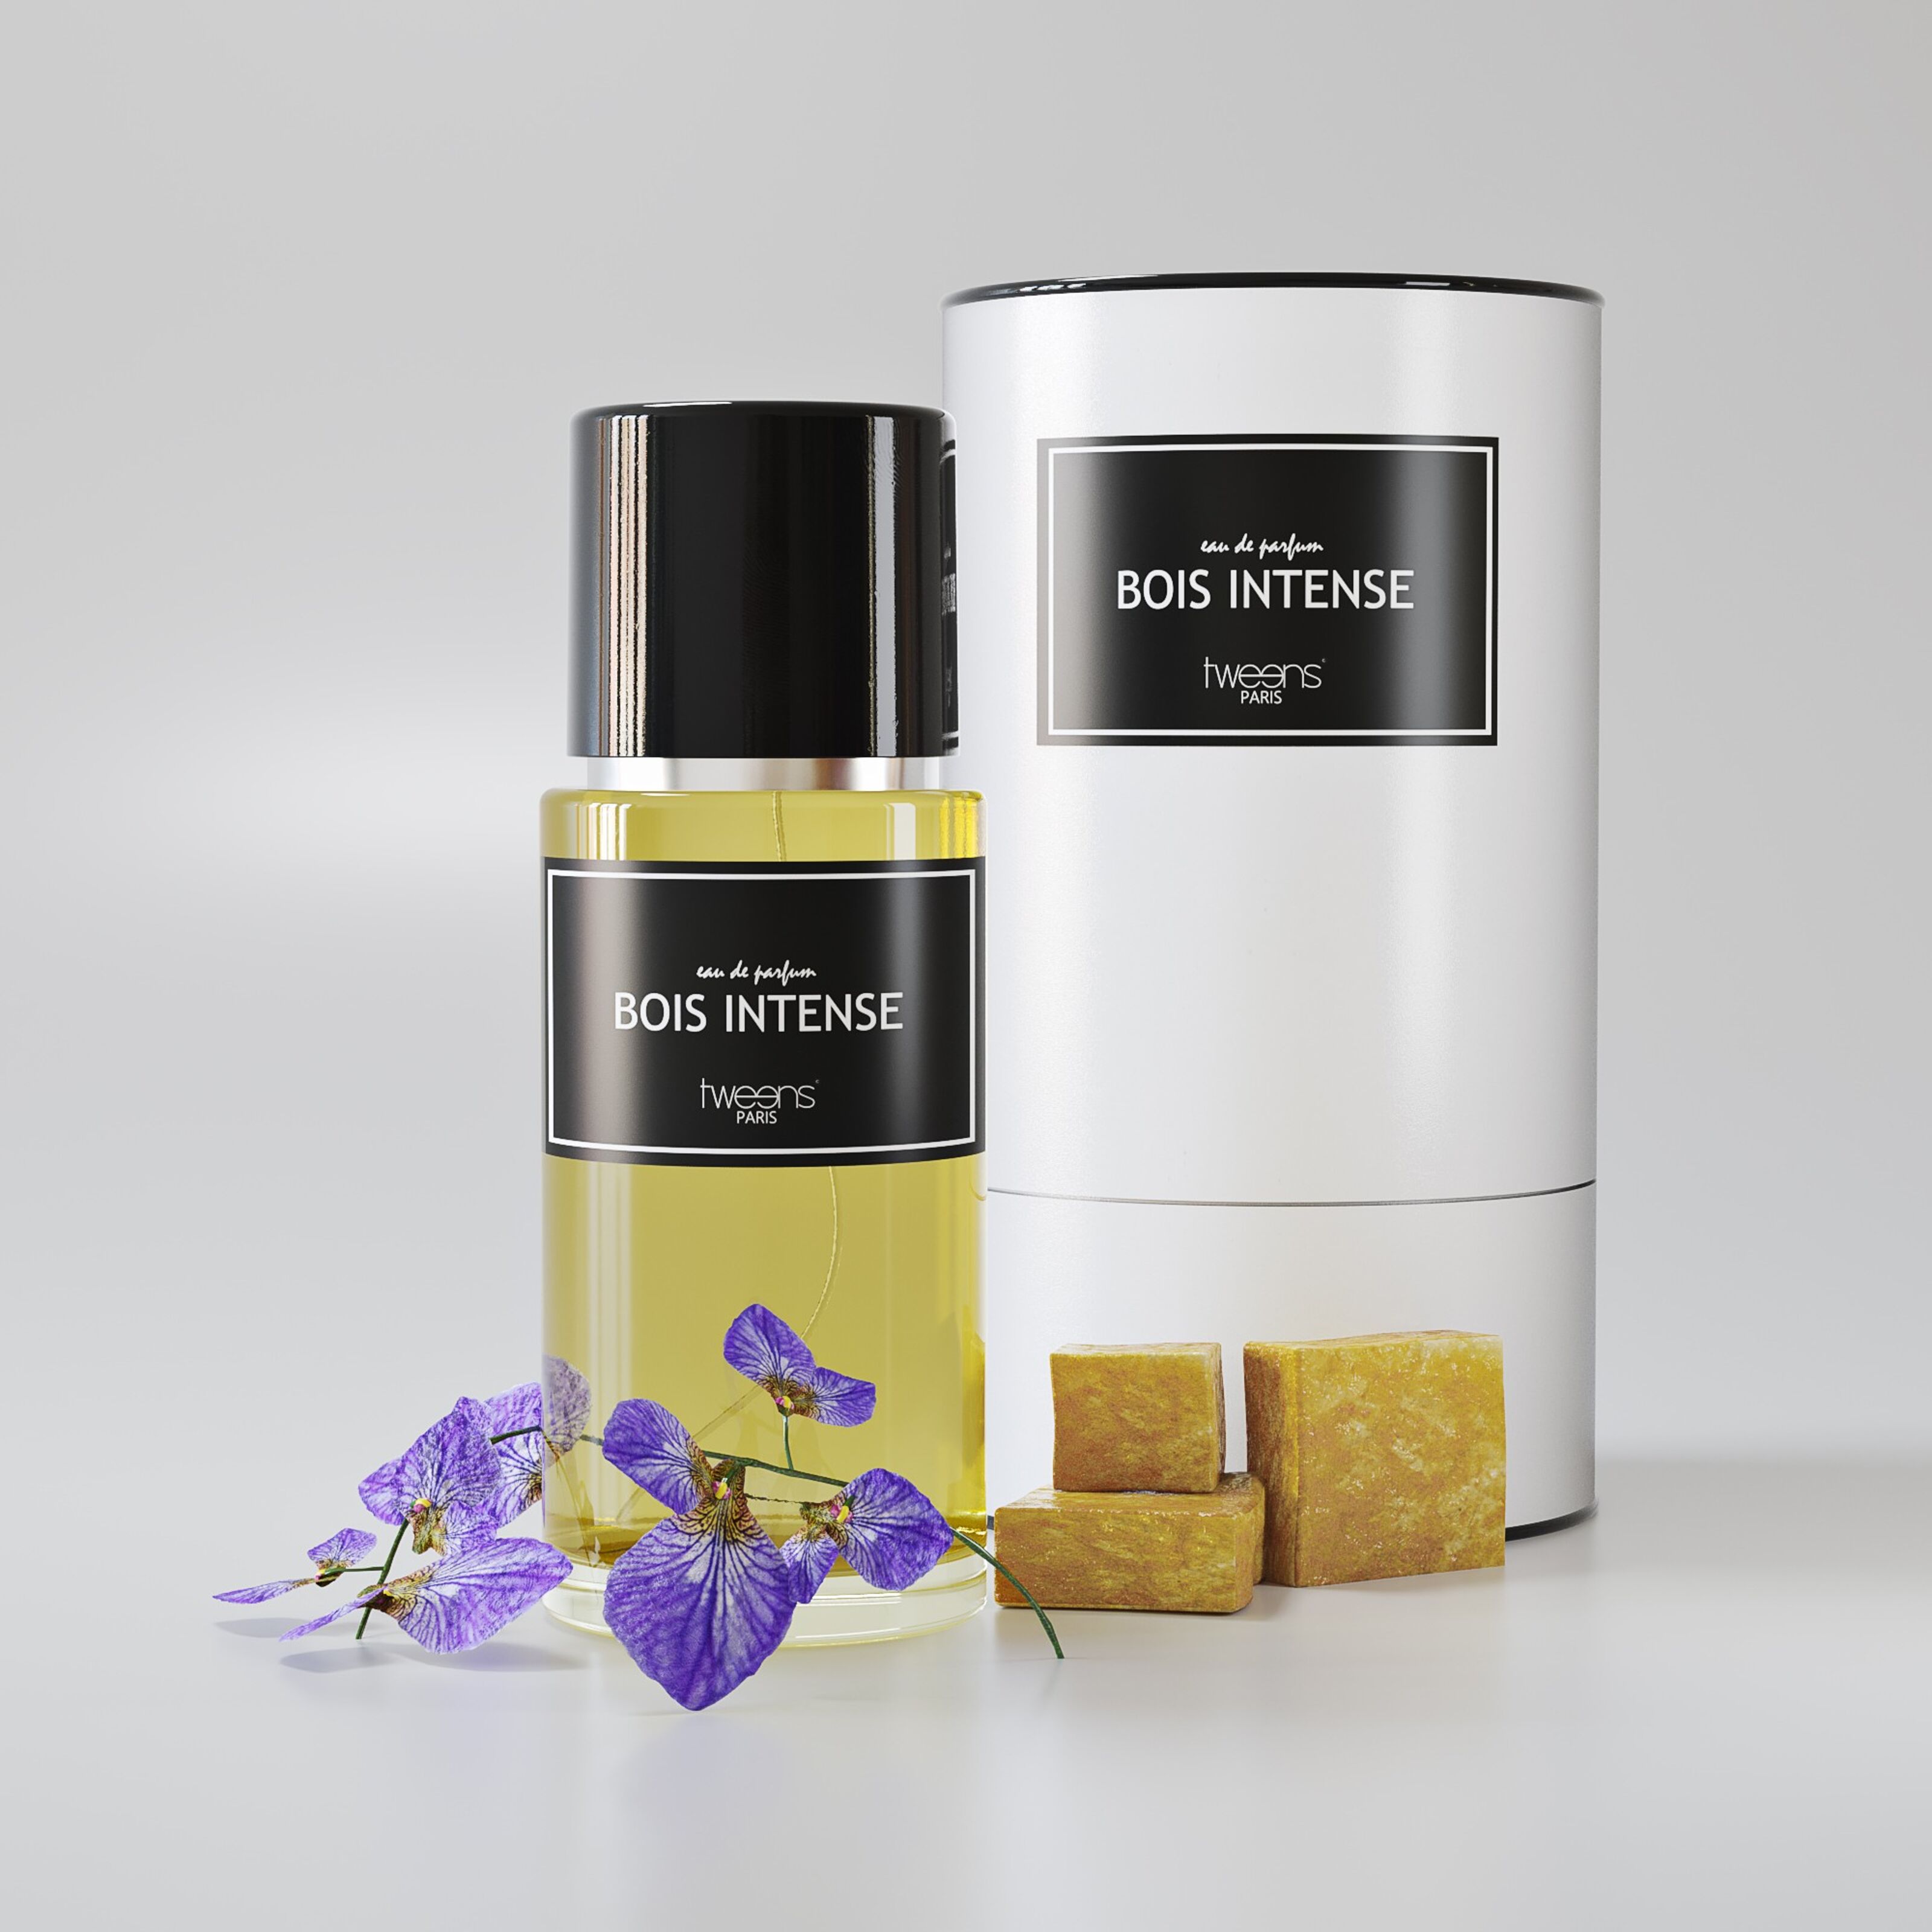 Parfum d'Ambiance Bois d'olivier 250 ML : Site et E-shop de la marque  française de cosmétiques-lifestyle Le Prius